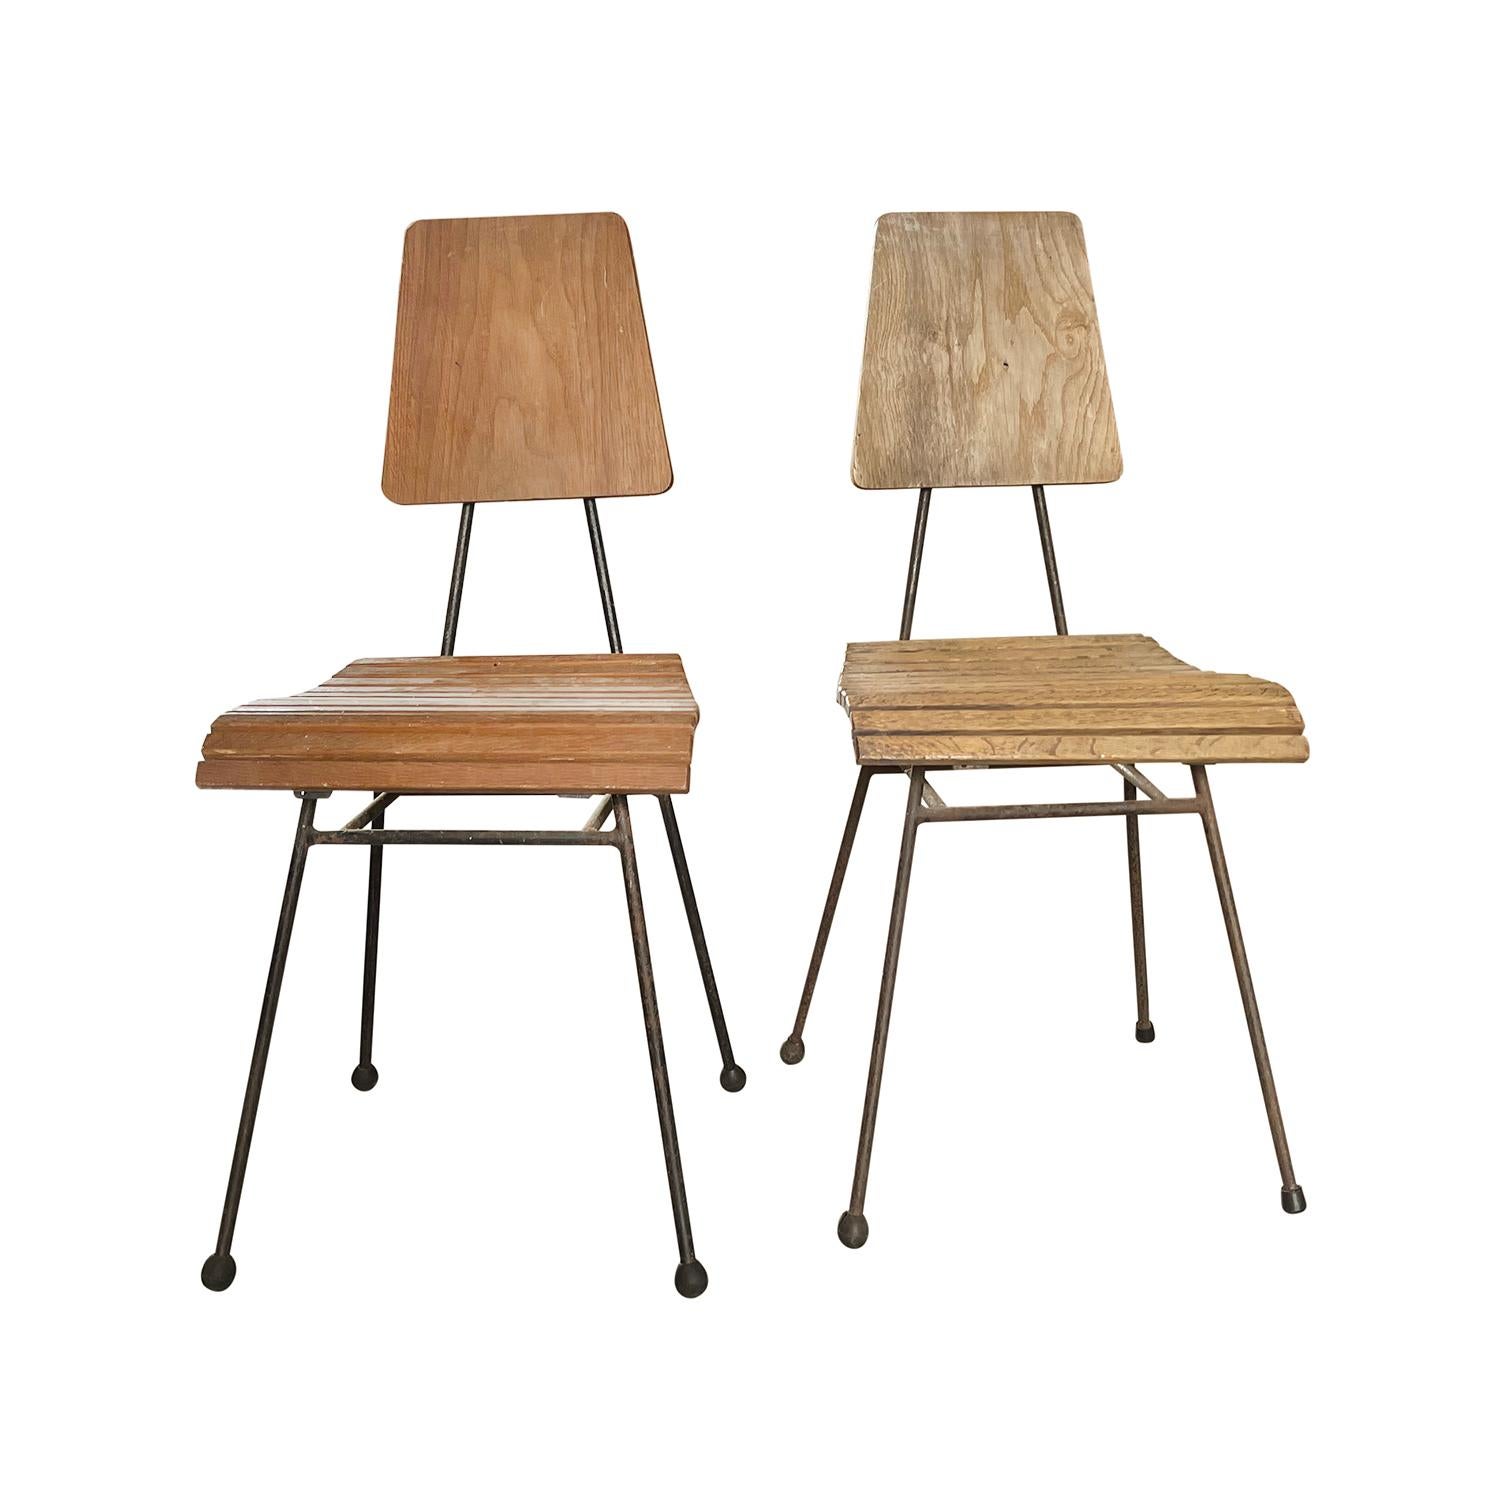 Paire de petites chaises d'appoint italiennes vintage du milieu du siècle, en bois de teck travaillé à la main, en bon état. Les chaises d'angle et d'extrémité ont un dossier légèrement incurvé et une assise cintrée, et reposent sur quatre longs